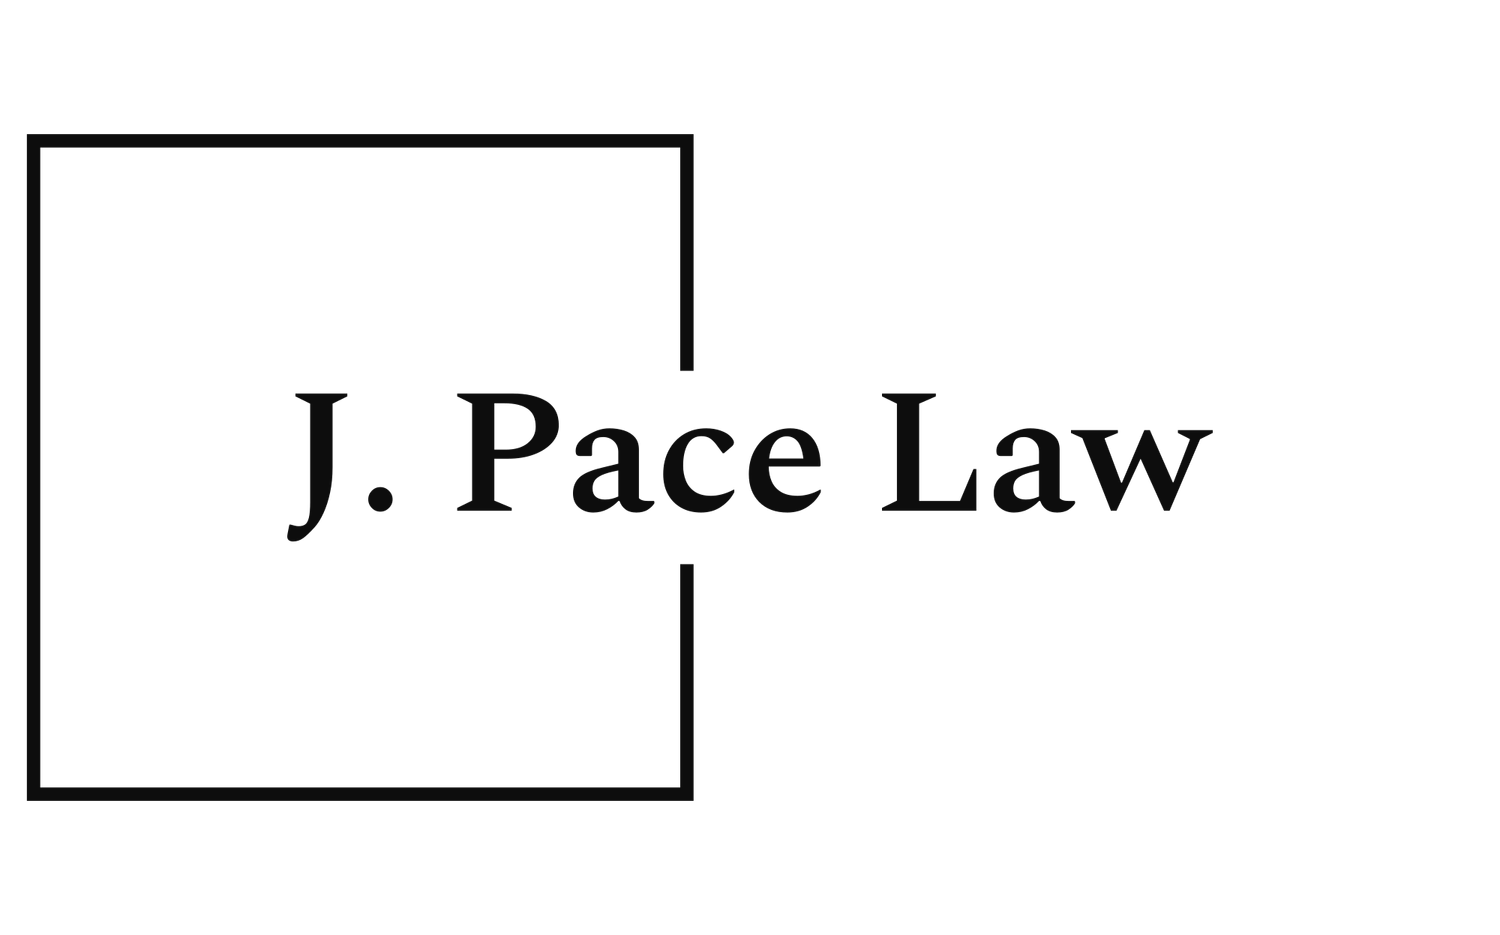 J. Pace Law           